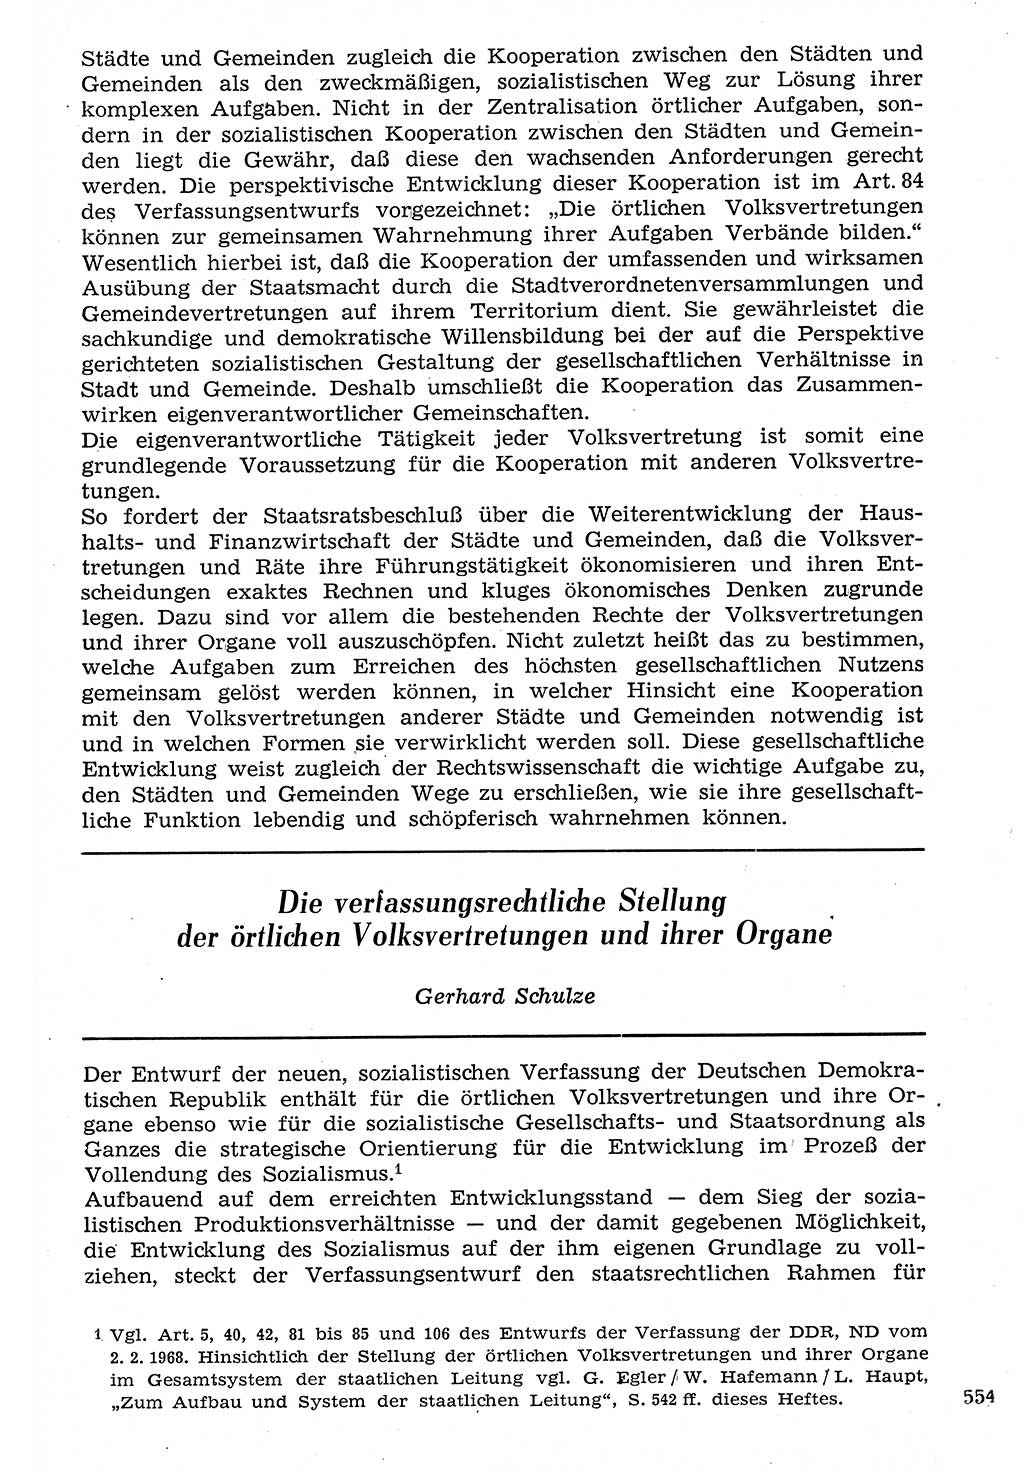 Staat und Recht (StuR), 17. Jahrgang [Deutsche Demokratische Republik (DDR)] 1968, Seite 554 (StuR DDR 1968, S. 554)